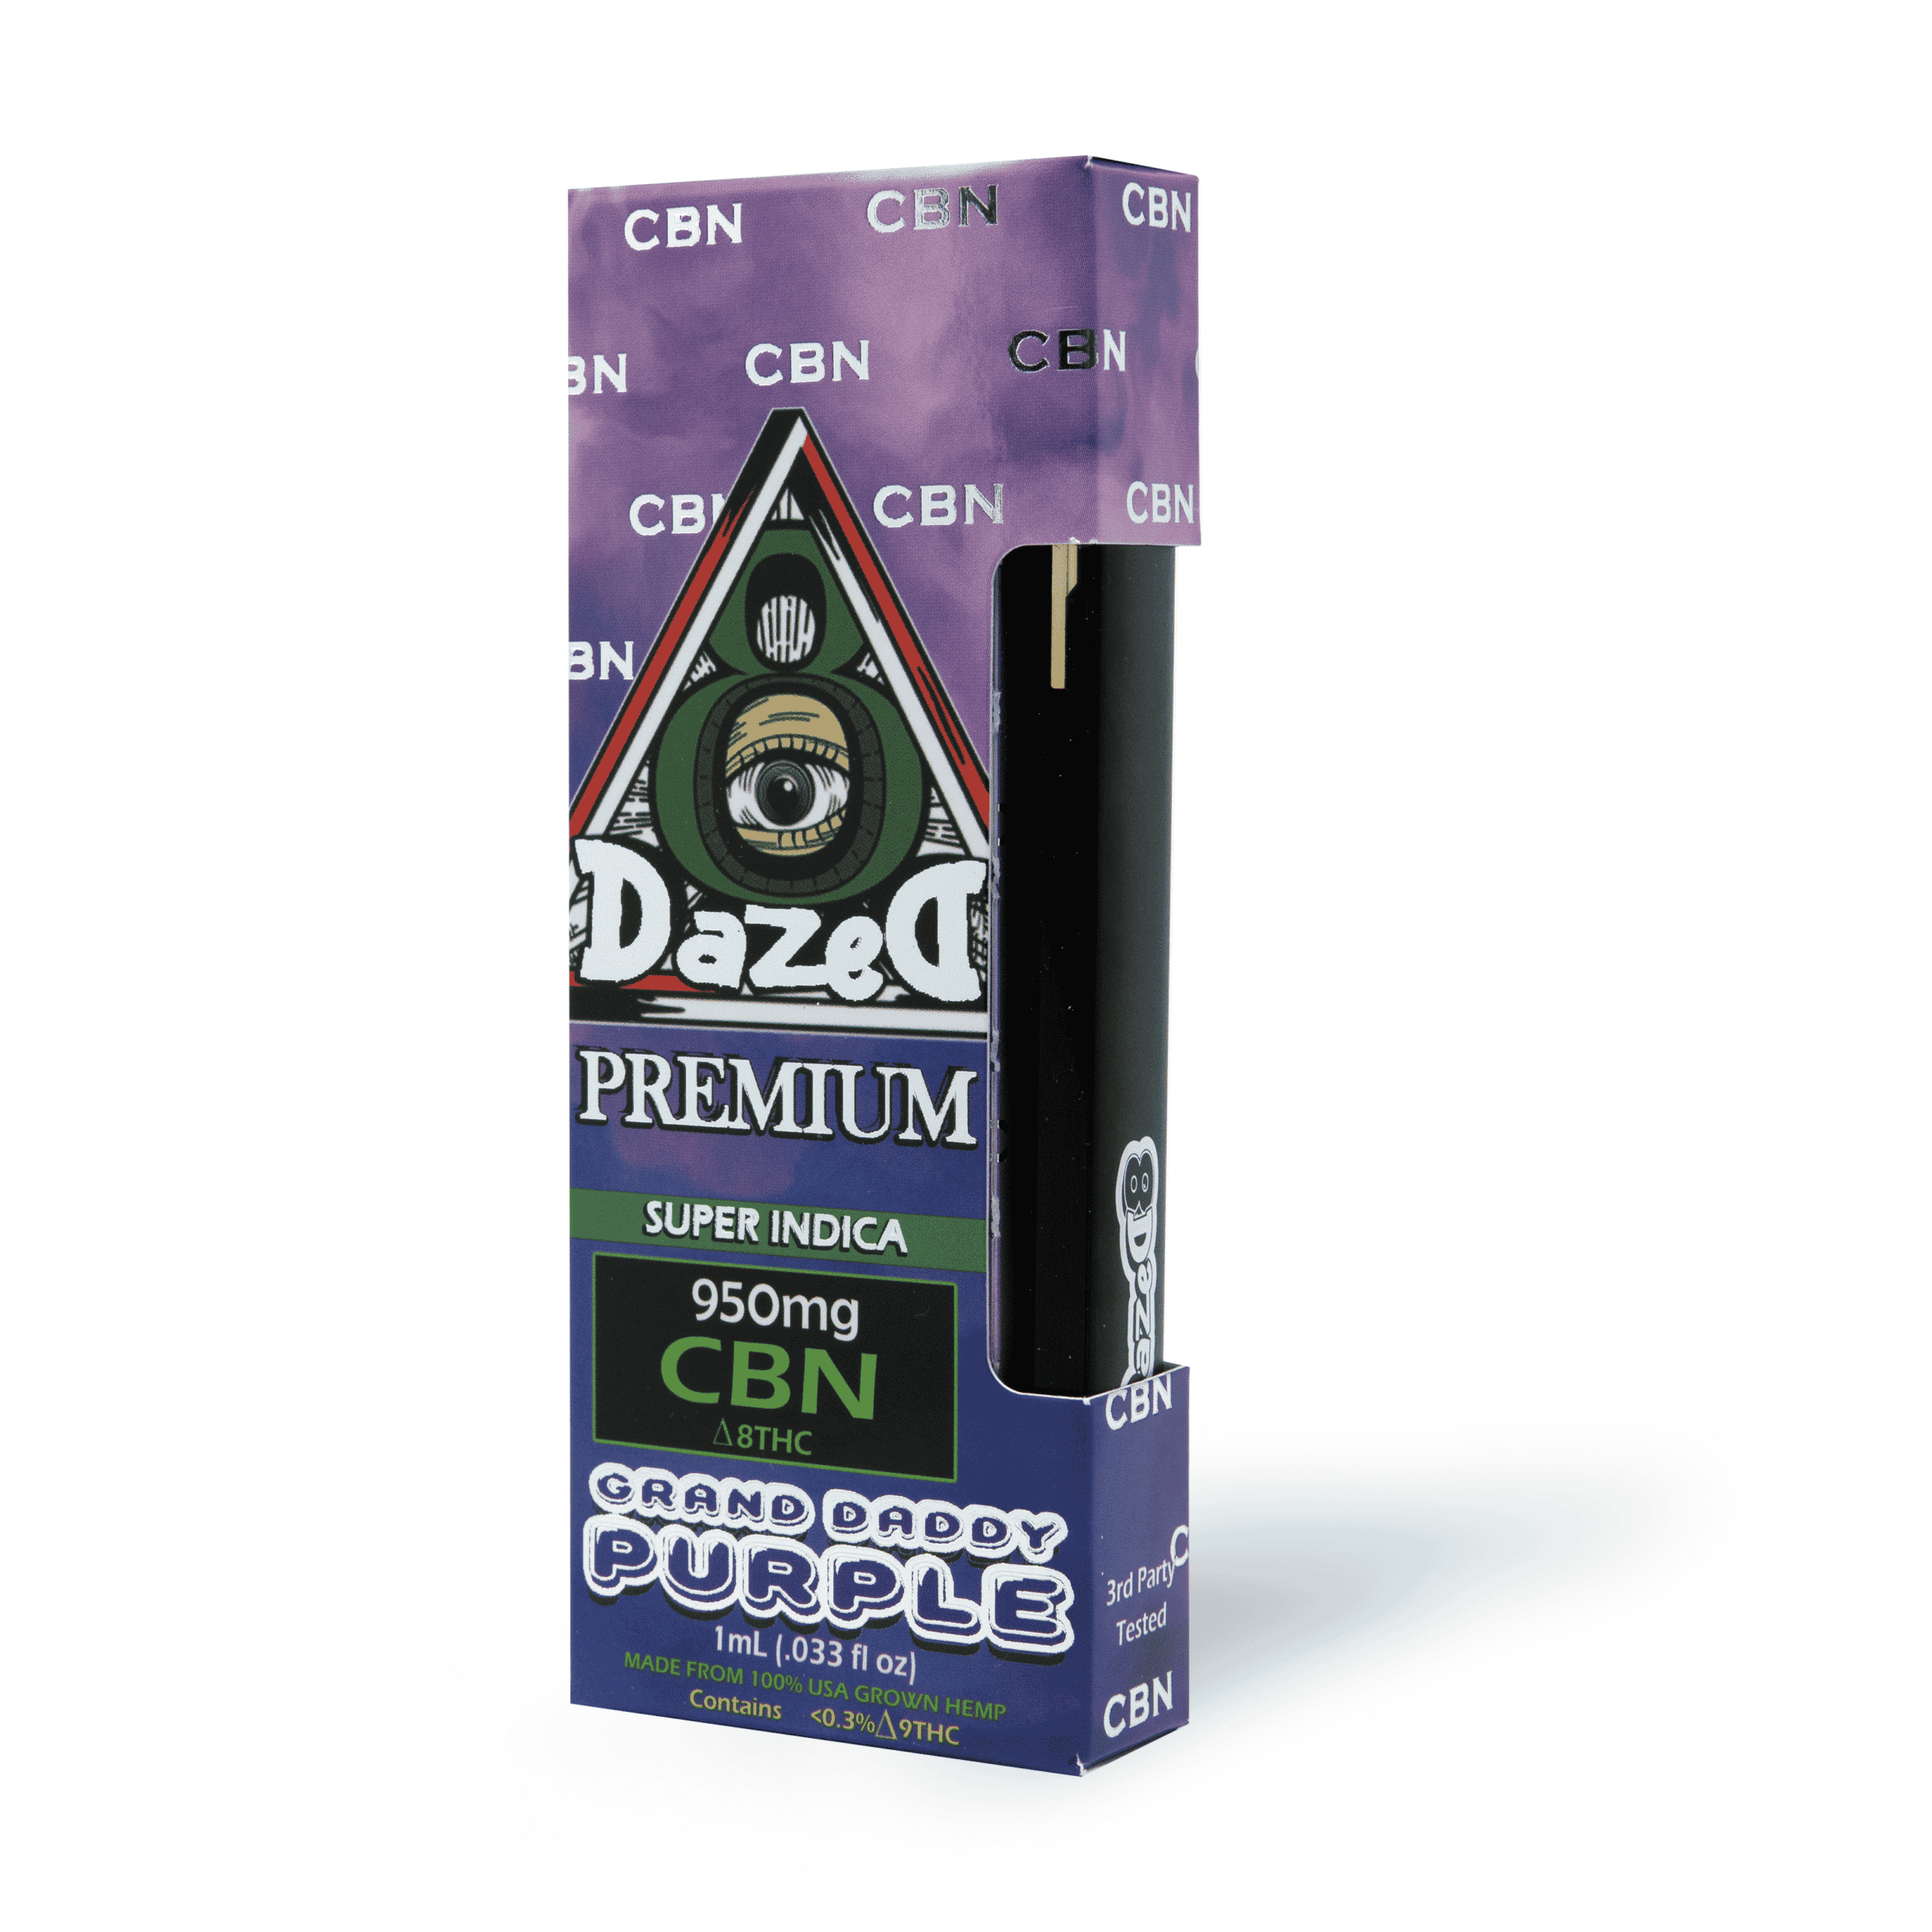 DazeD8 Granddaddy Purple CBN Delta 8 Disposable (1g) Best Price